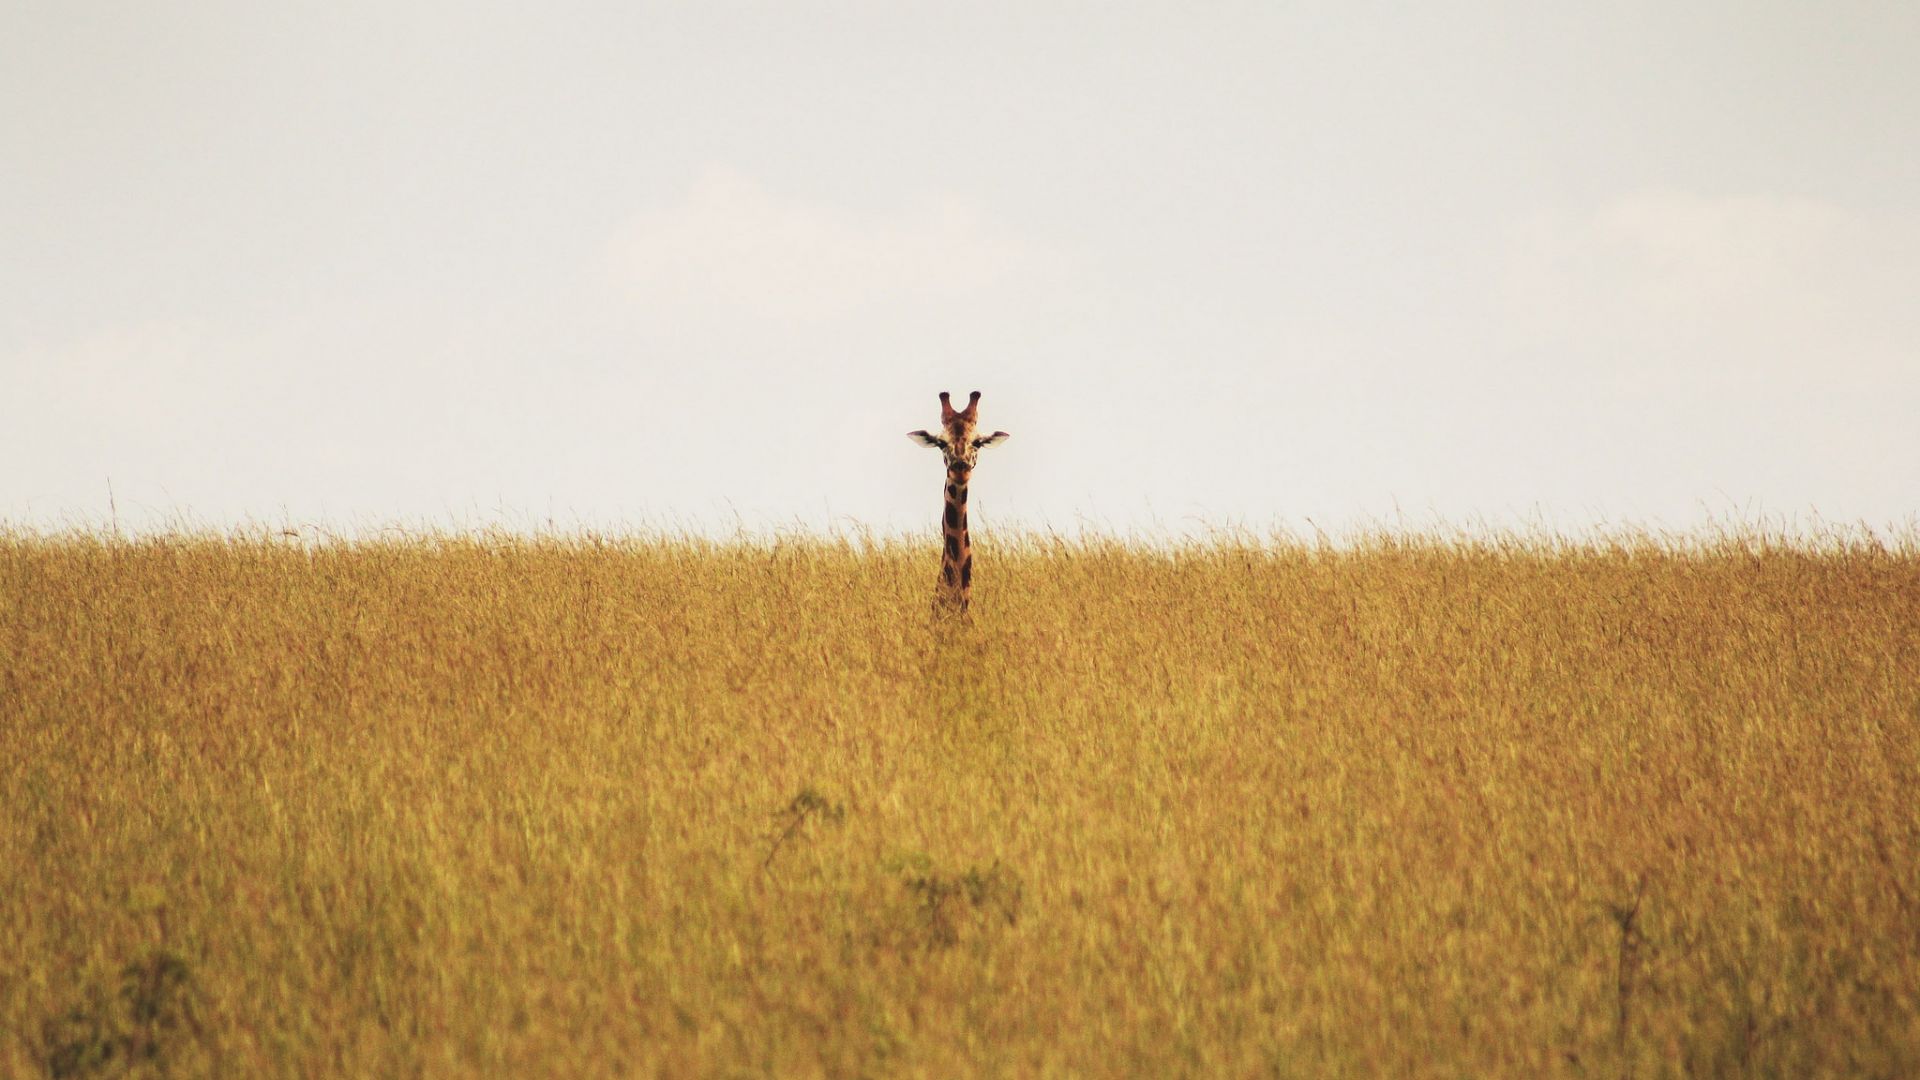 Wallpaper Giraffe in grass field landscape